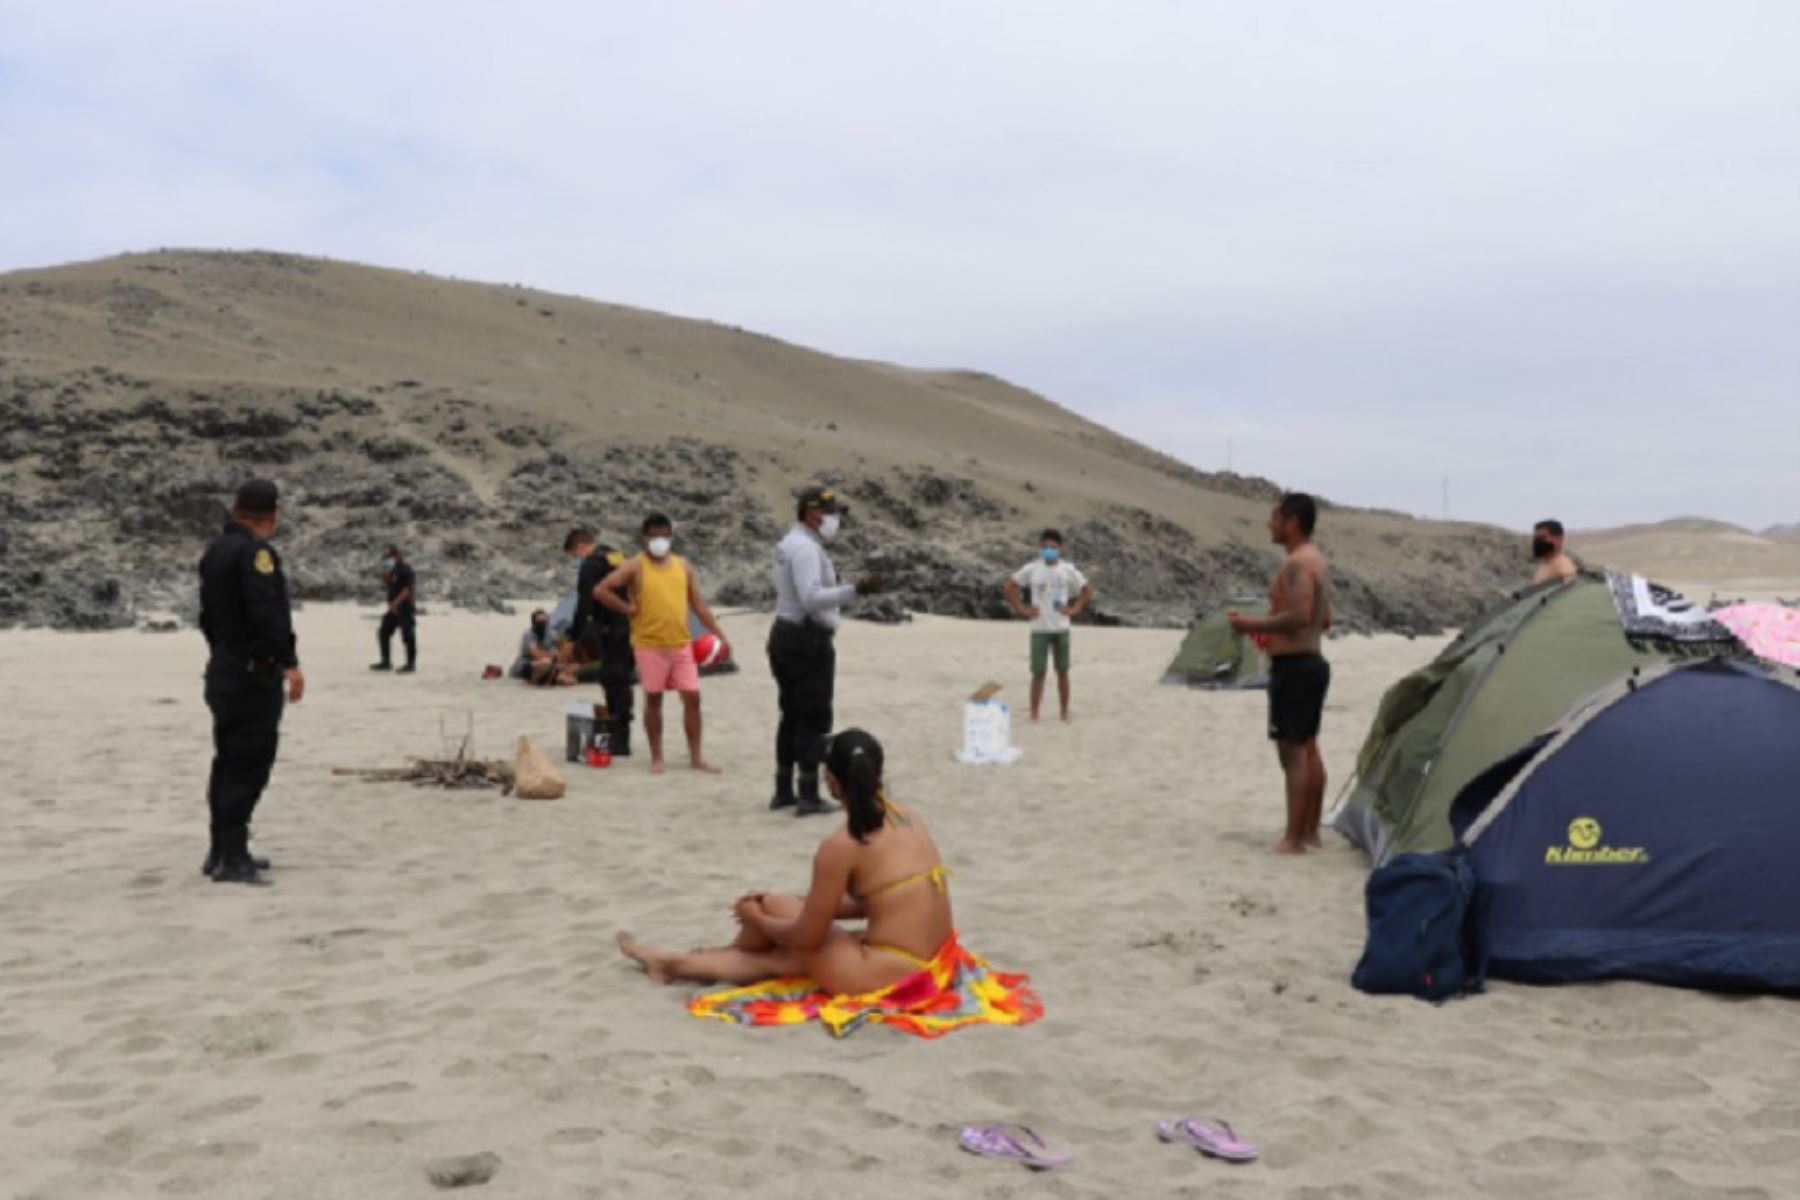 En cumplimiento a la disposición del Ejecutivo de mantener cerradas las playas, la Policía Nacional realizó operativos en Huarmey, provincia costera de la región Áncash, para hacer respetar la medida que busca evitar un rebrote de contagios de covid-19.